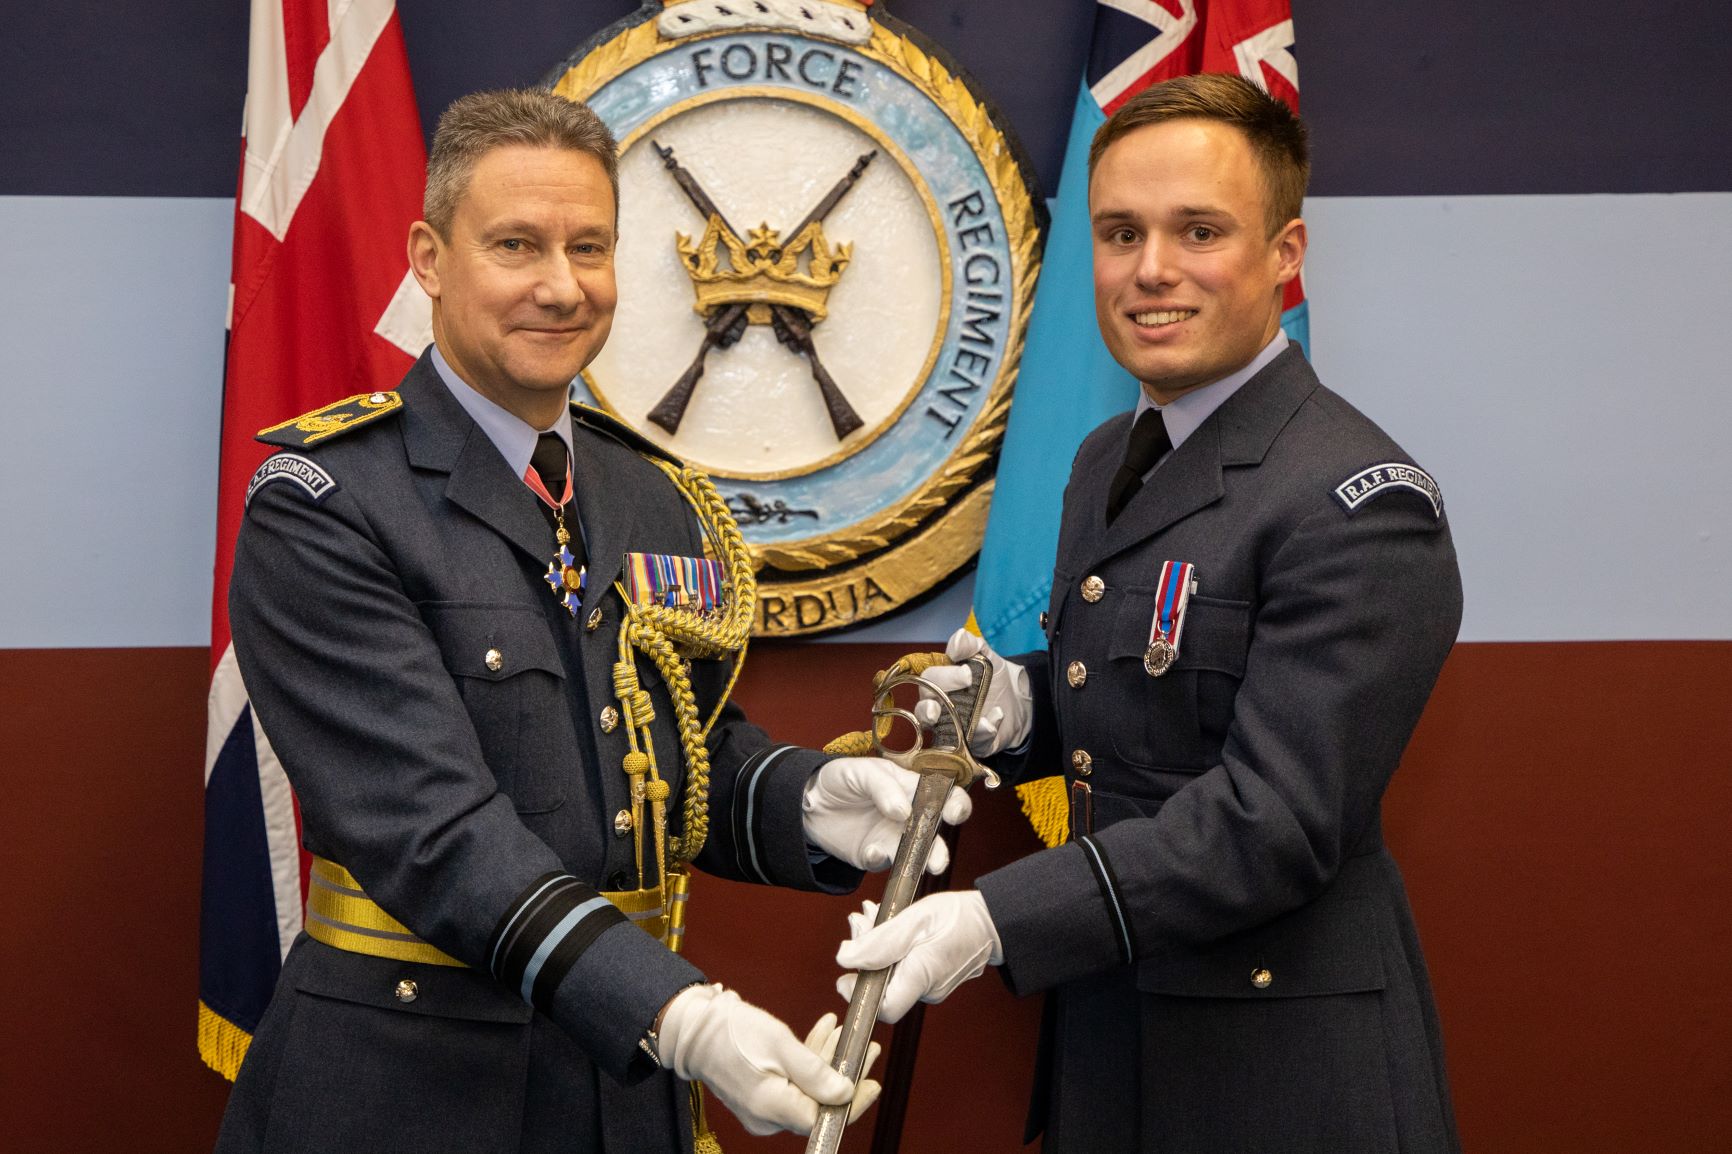 Image shows RAF aviators holding Officer's Sabre.